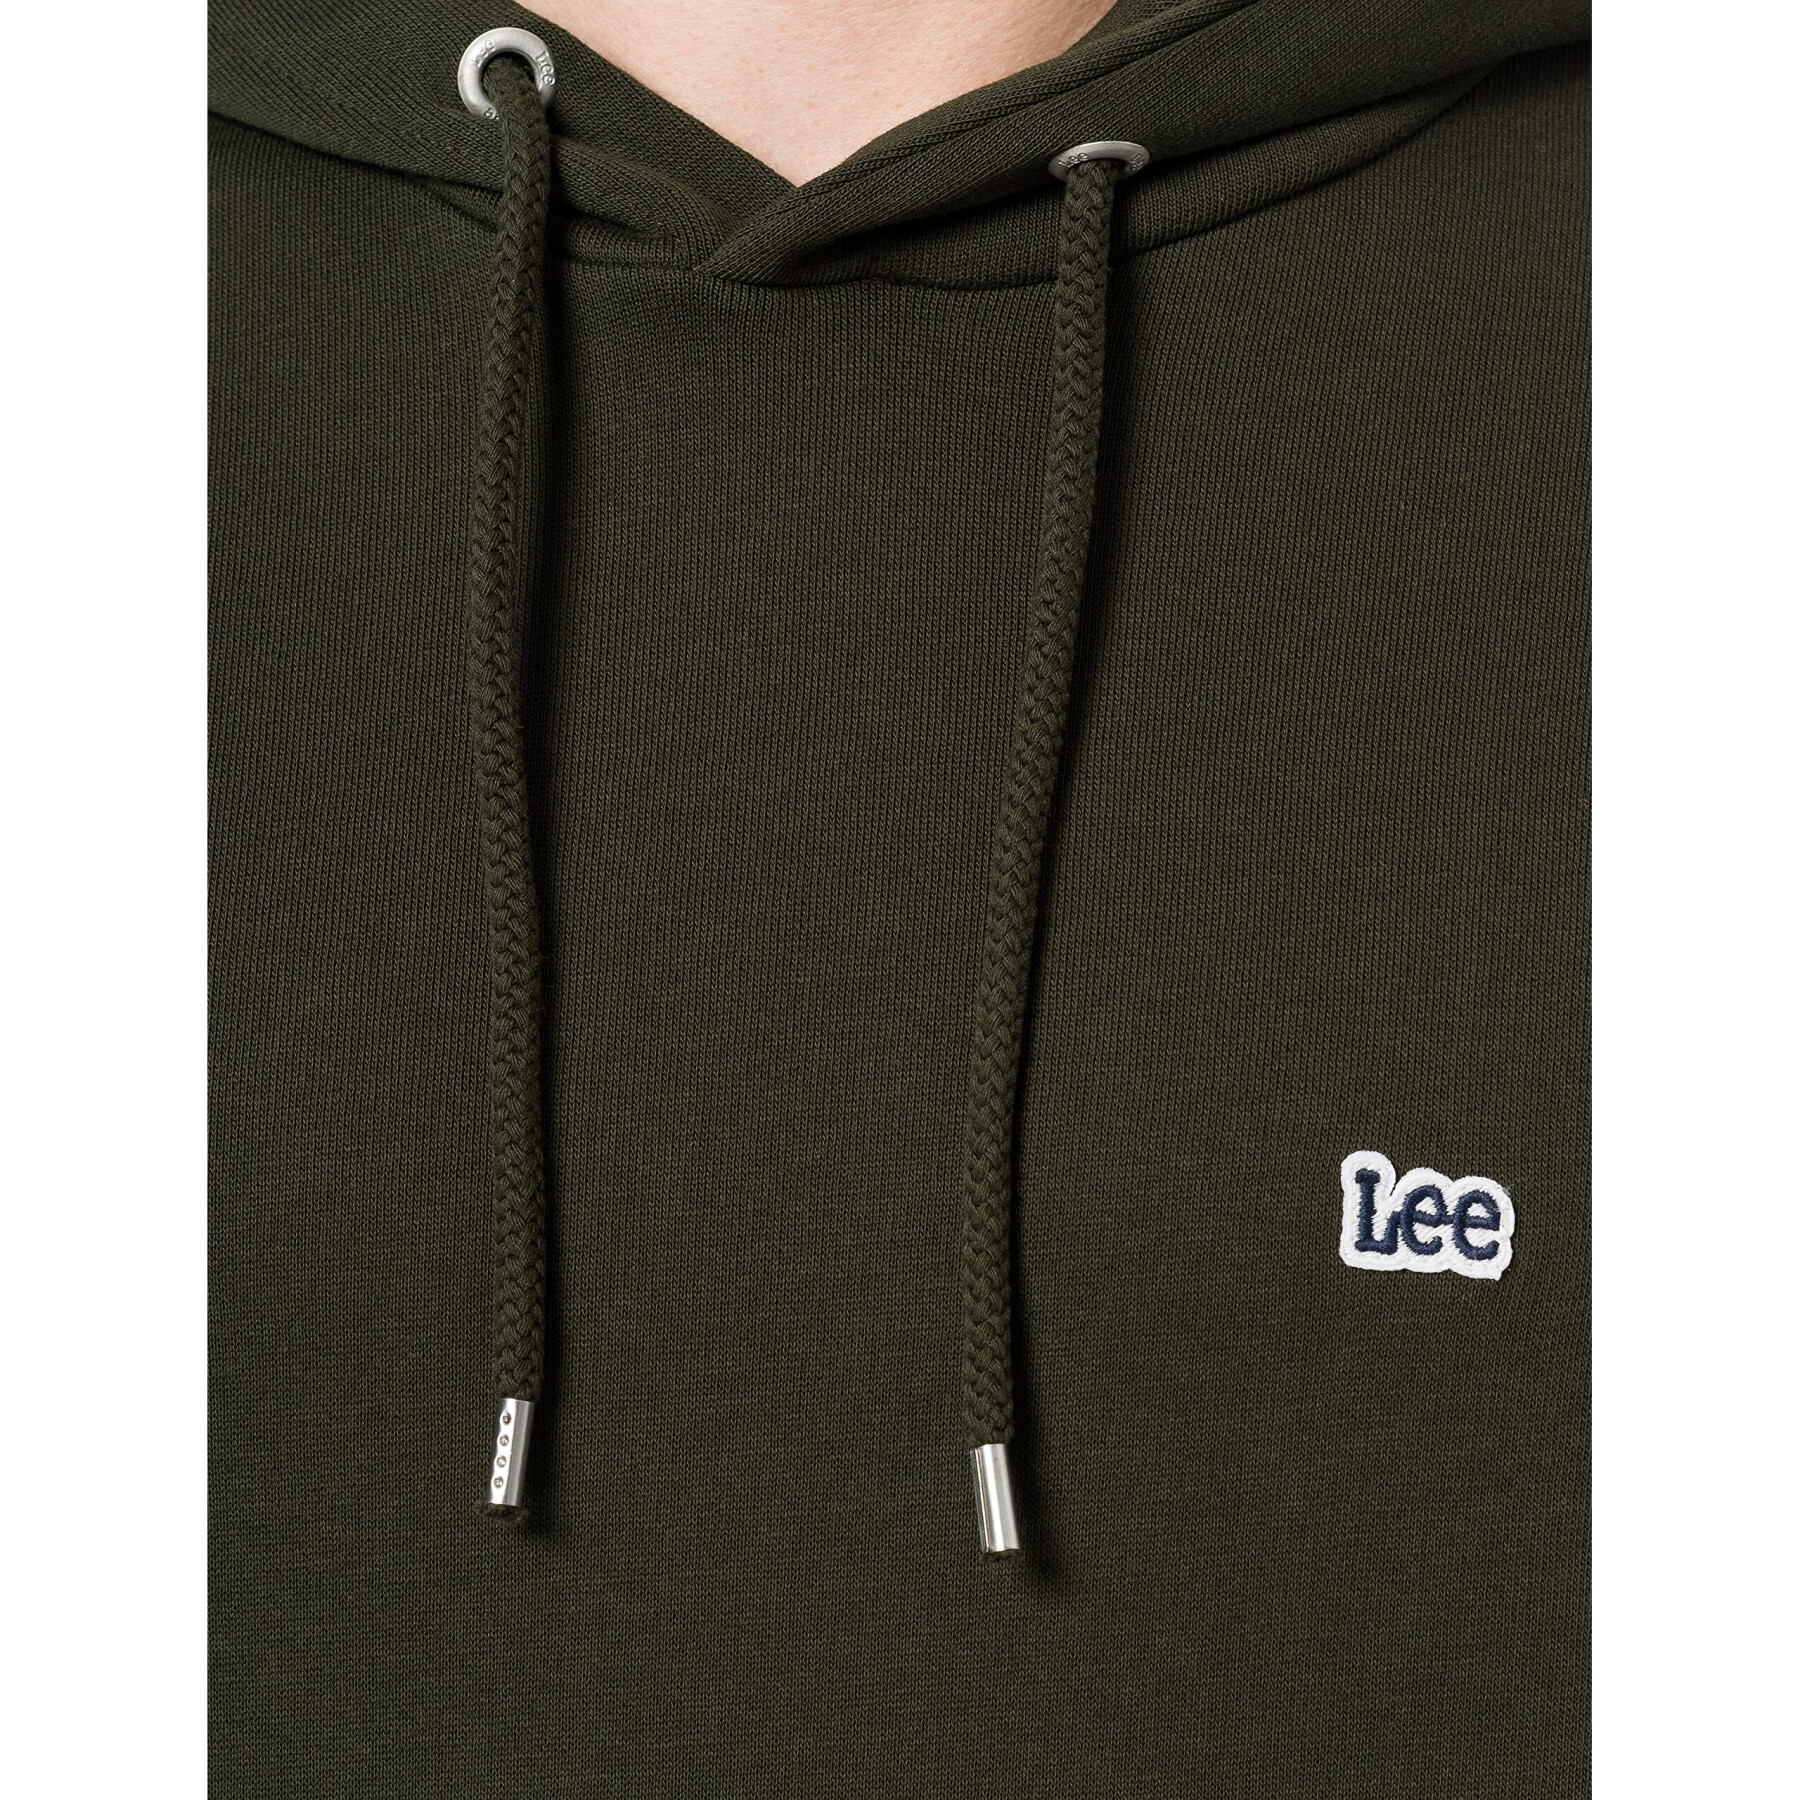 Sweatshirt Lee Serpico